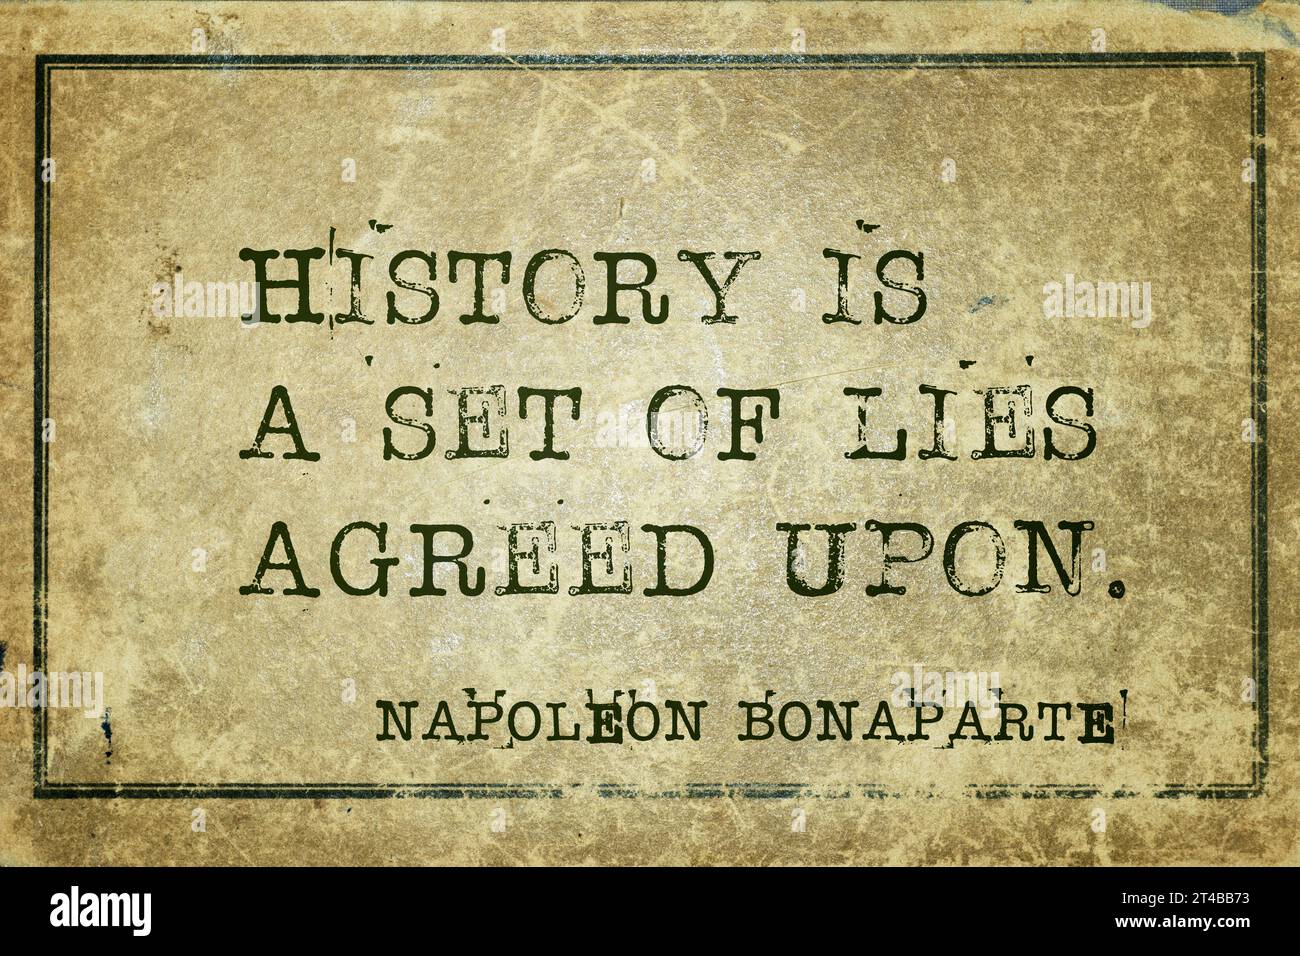 Geschichte ist eine Reihe von Lügen, die vereinbart wurden - das alte französische Militär- und politische Führer Napoleon Bonaparte Zitat auf Vintage-Karton gedruckt Stockfoto